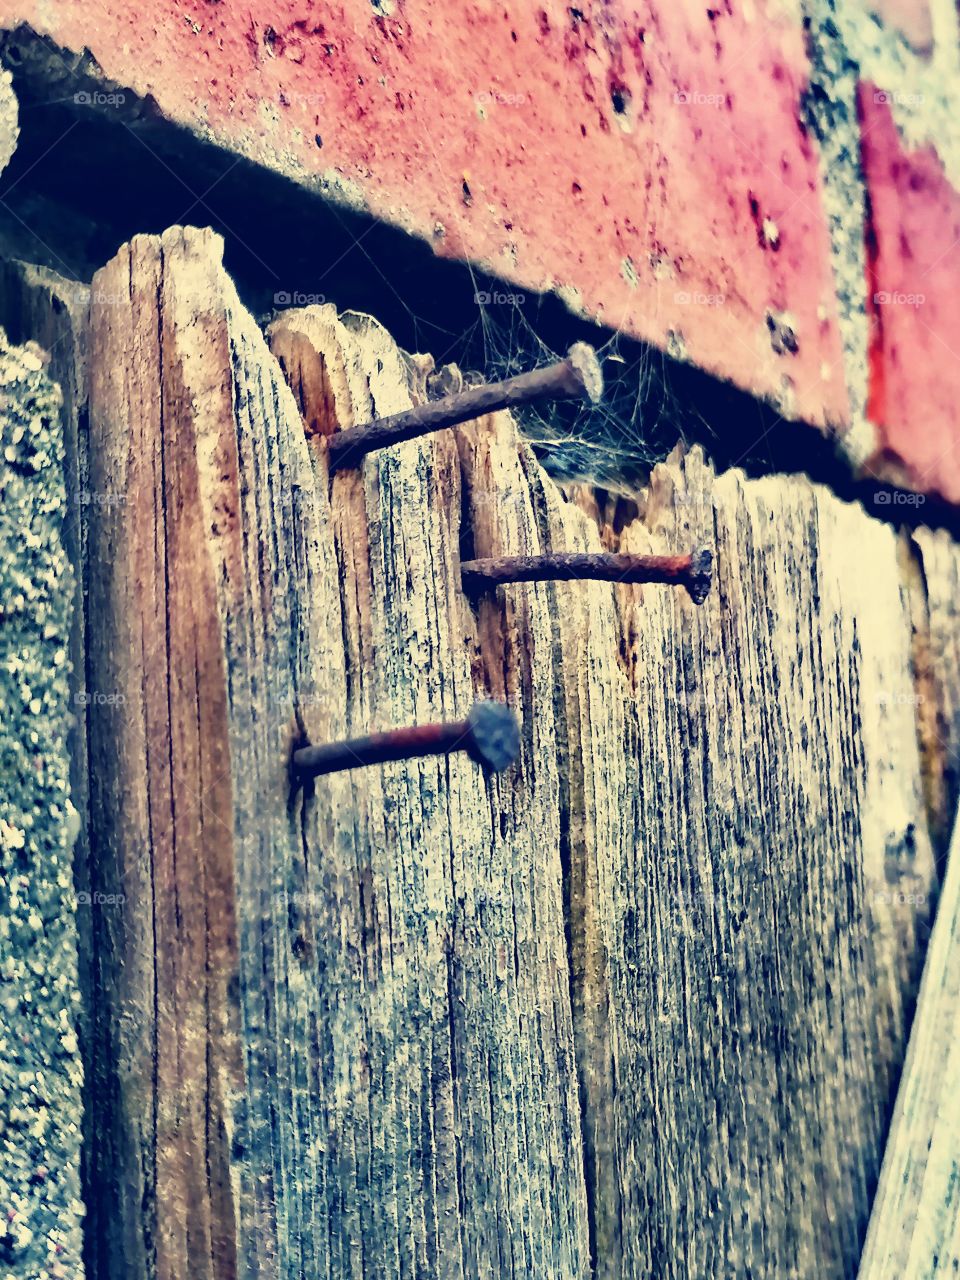 Three nails in the door